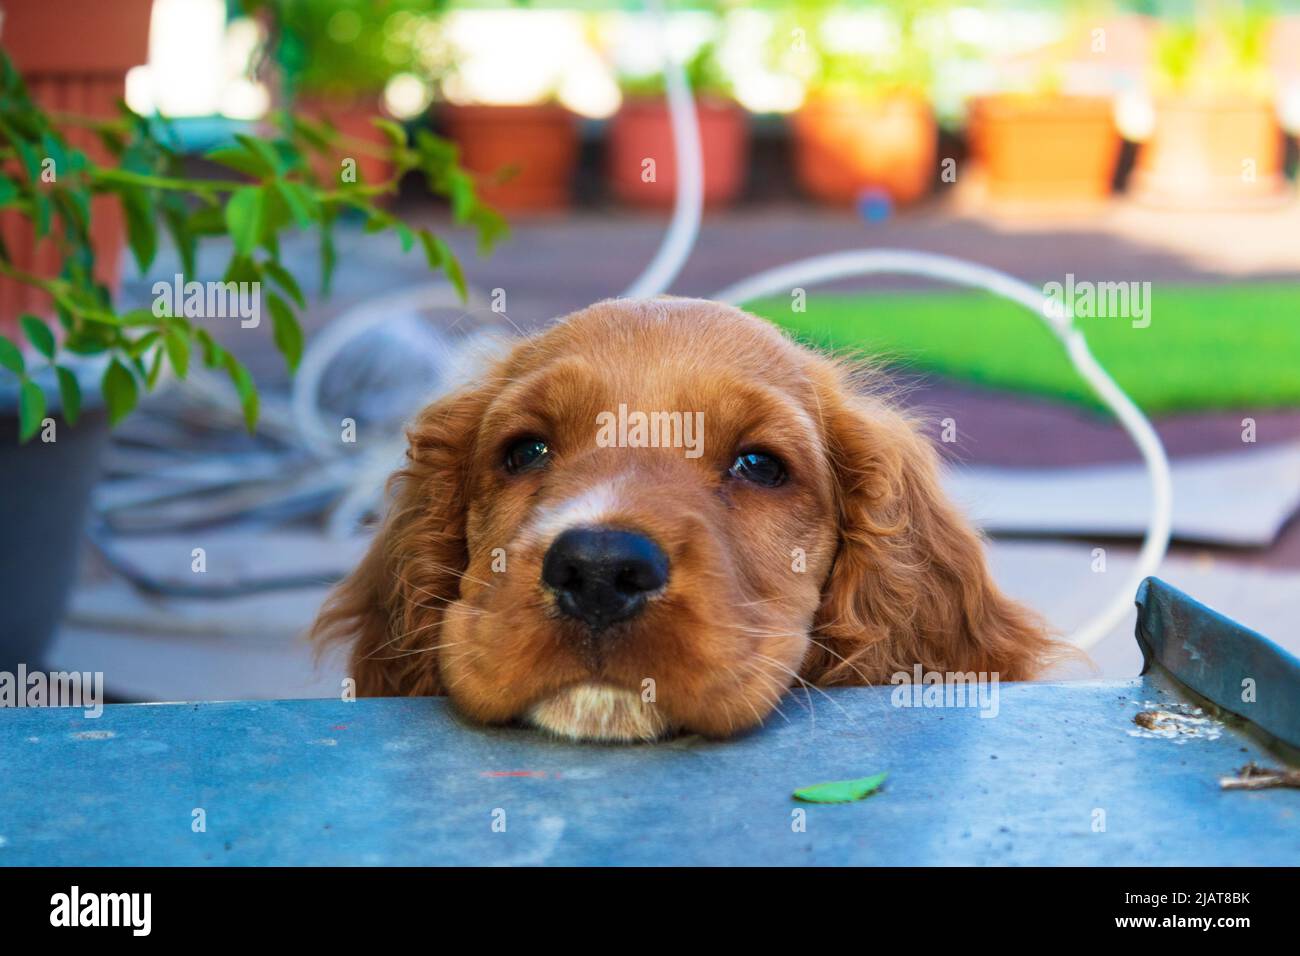 Lindo cachorro de dos meses Inglés Cocker Spaniel perro Johny relajarse en  la terraza, en la habitación piso de parqué o baldosas de terracota abrazó  un juguete de peluche Fotografía de stock -